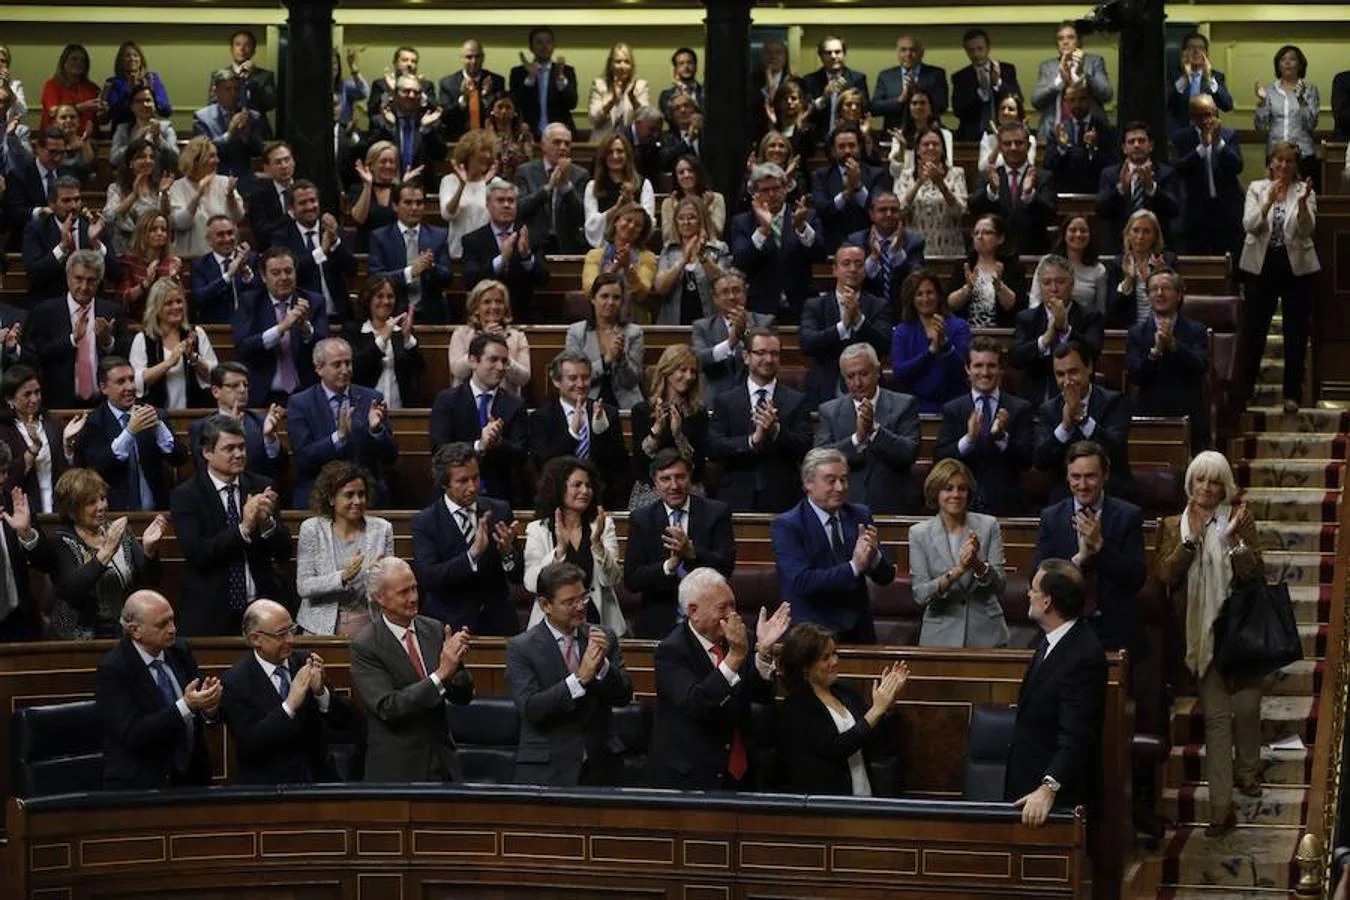 Tras volver a aceptar el encargo del Rey, Rajoy se sometió a un segundo debate de investidura, en el que logró ser investido en segunda ronda por mayoría simple gracias a la abstención de 68 de los 83 diputados presentes del PSOE. 